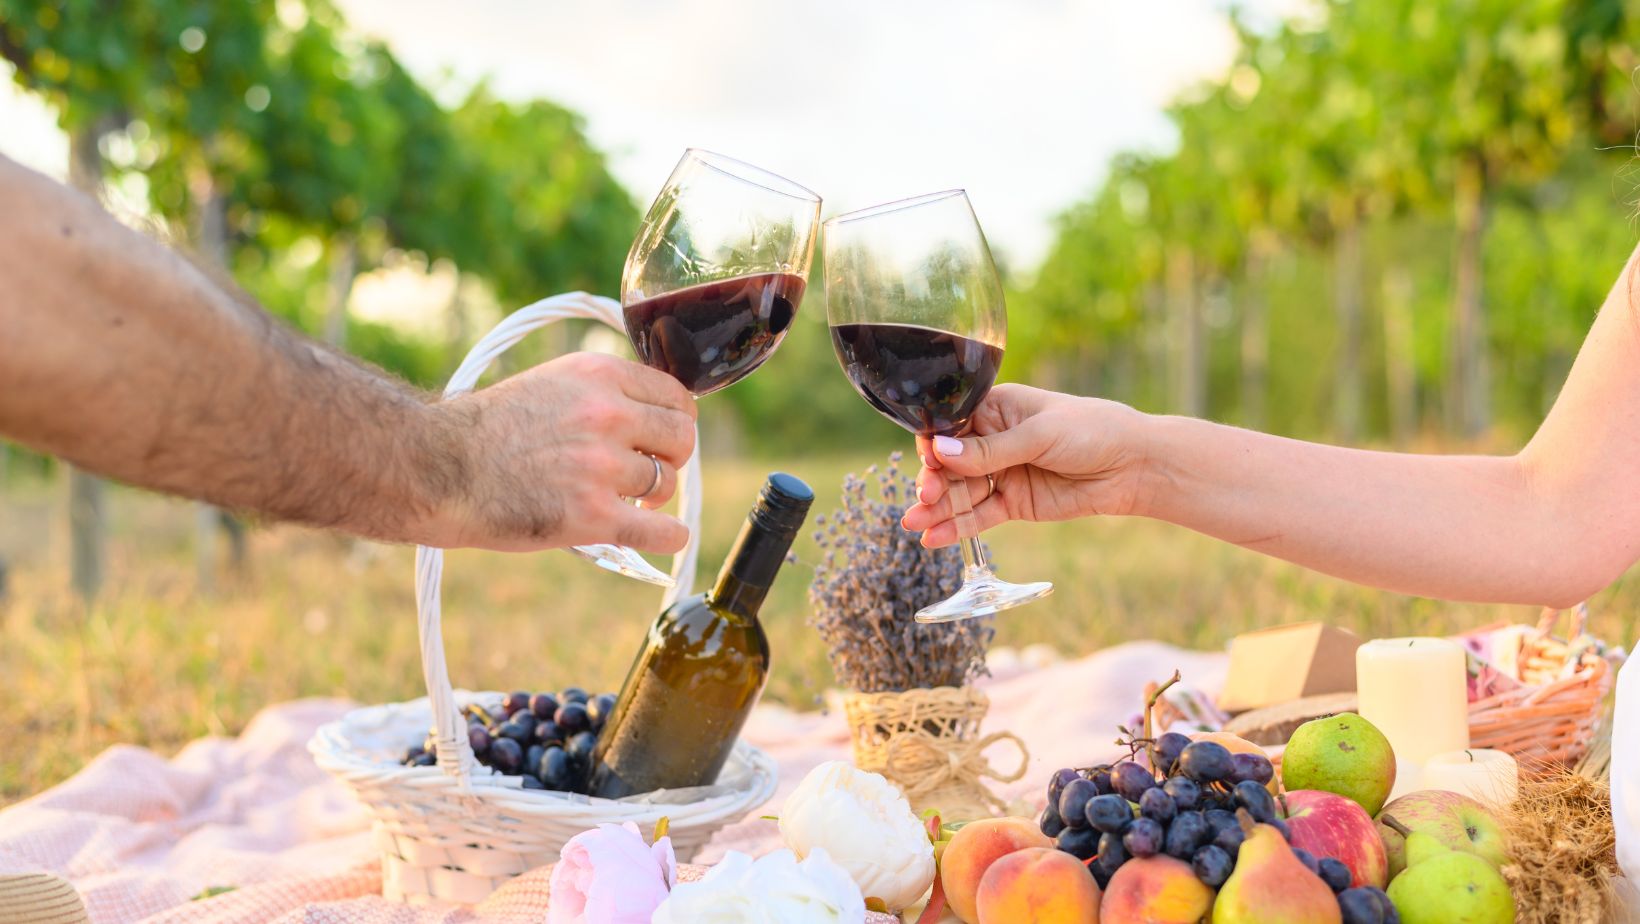 Deux personnes trinquent avec du vin rouge au milieu d’un rang de vigne pendant un pique-nique.